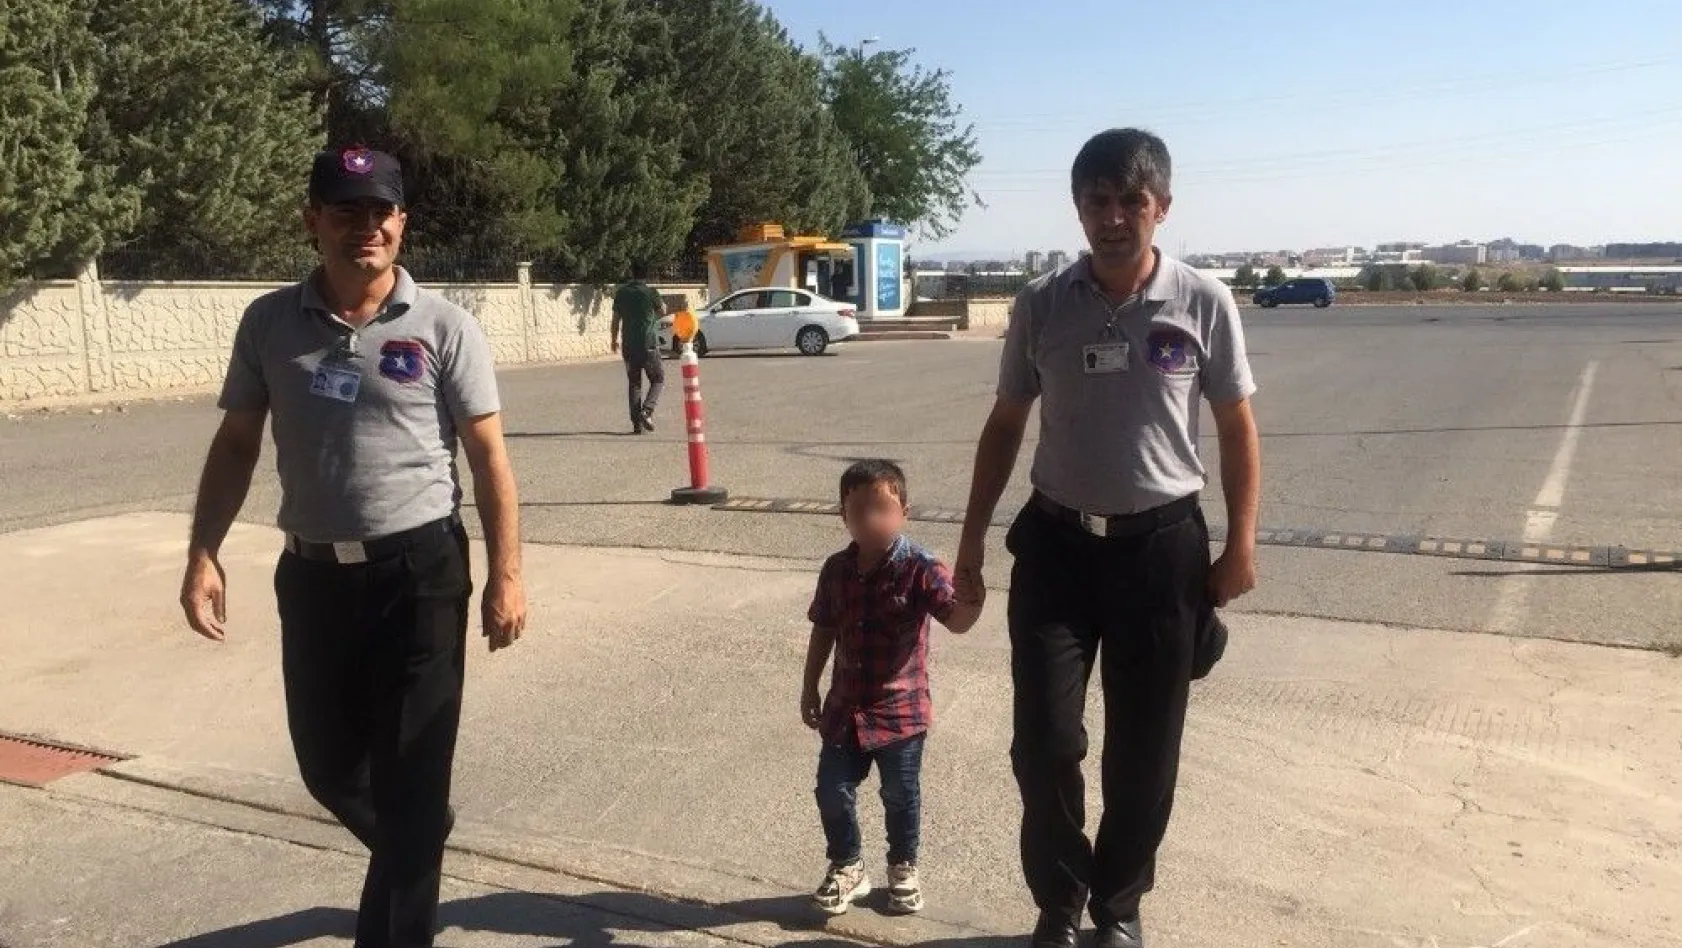 Özel güvenlik görevlileri buldukları çocuğu polise teslim etti
